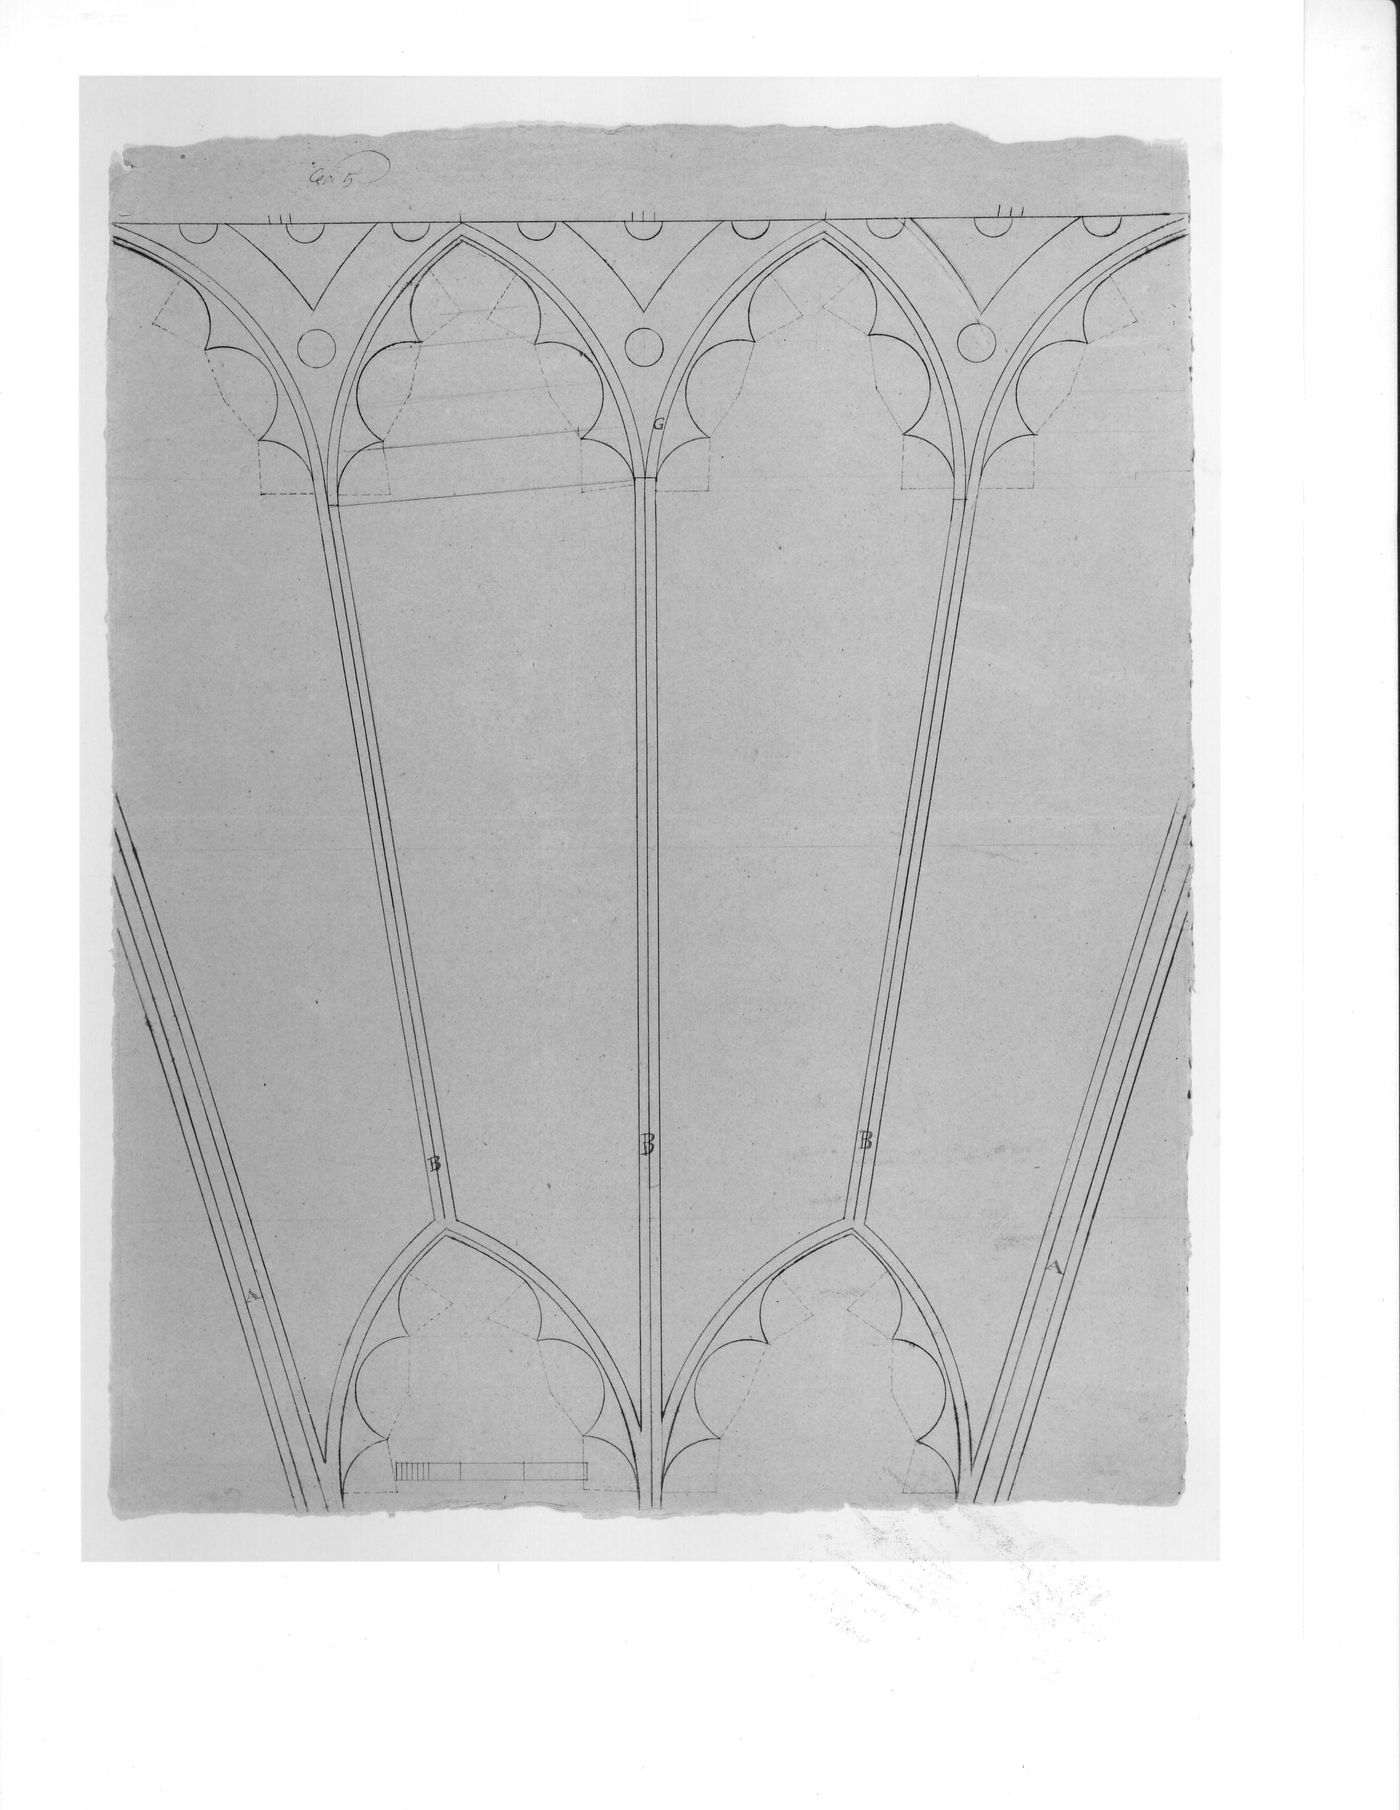 Elevation for a decorative detail for the ceiling for Notre-Dame de Montréal